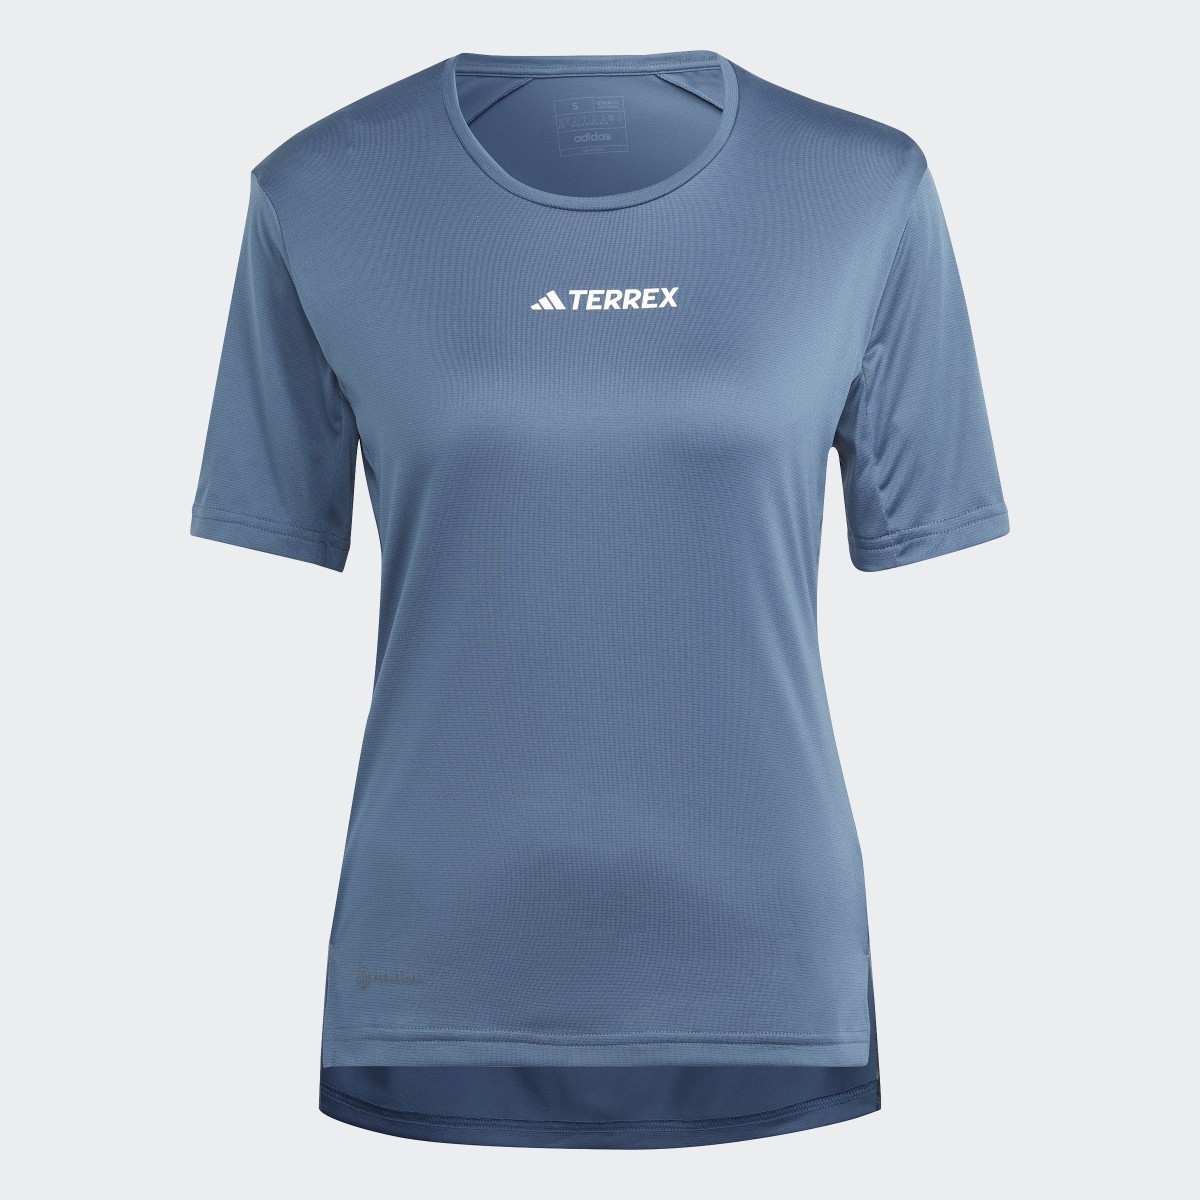 Adidas TERREX Multi T-Shirt. 5